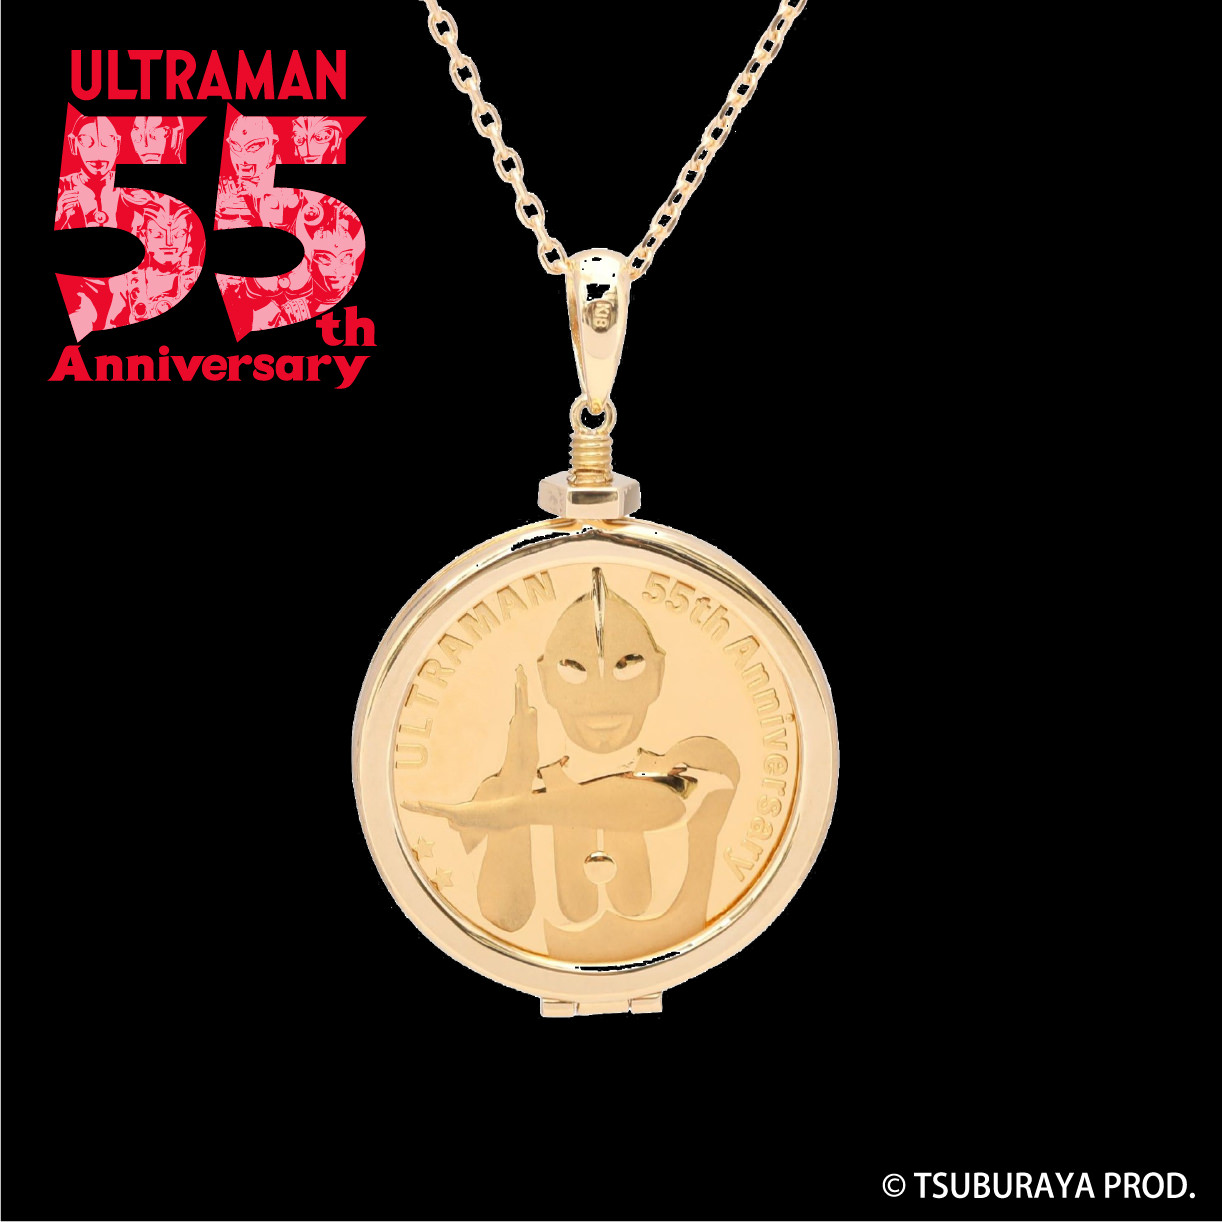 ウルトラマン 純金メダル 55th ペンダント Anniversary 限定55個